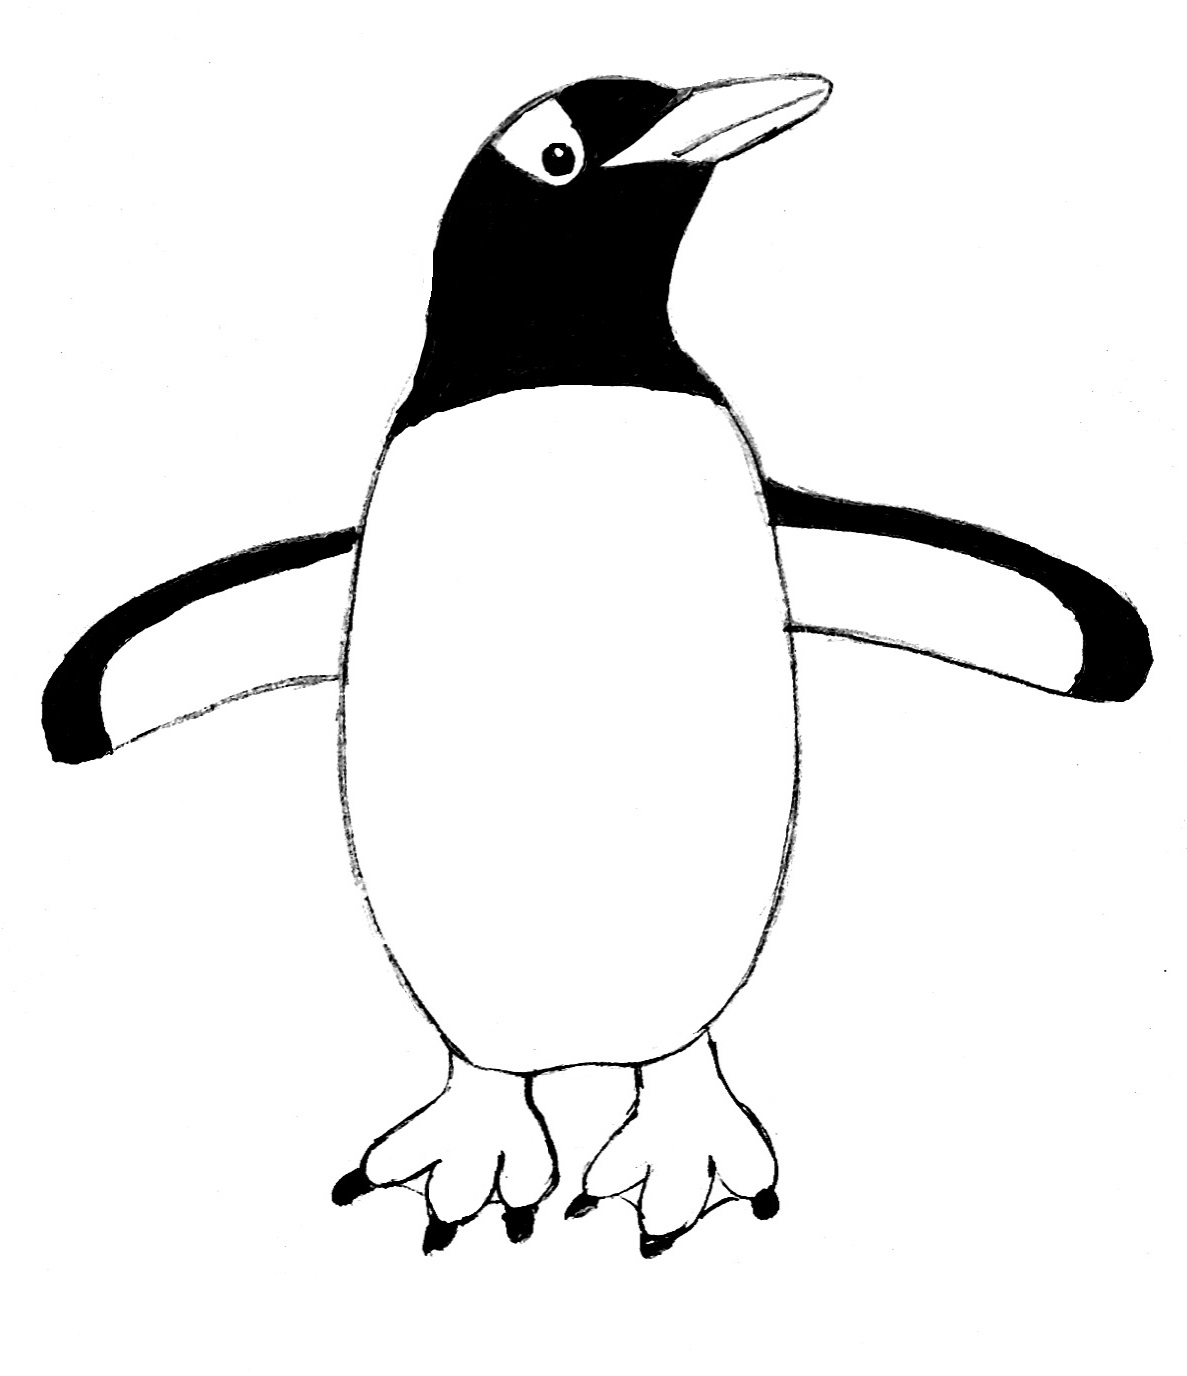 https://www.samanthasbell.com/wp-content/uploads/2014/11/penguin-drawing-1.jpg